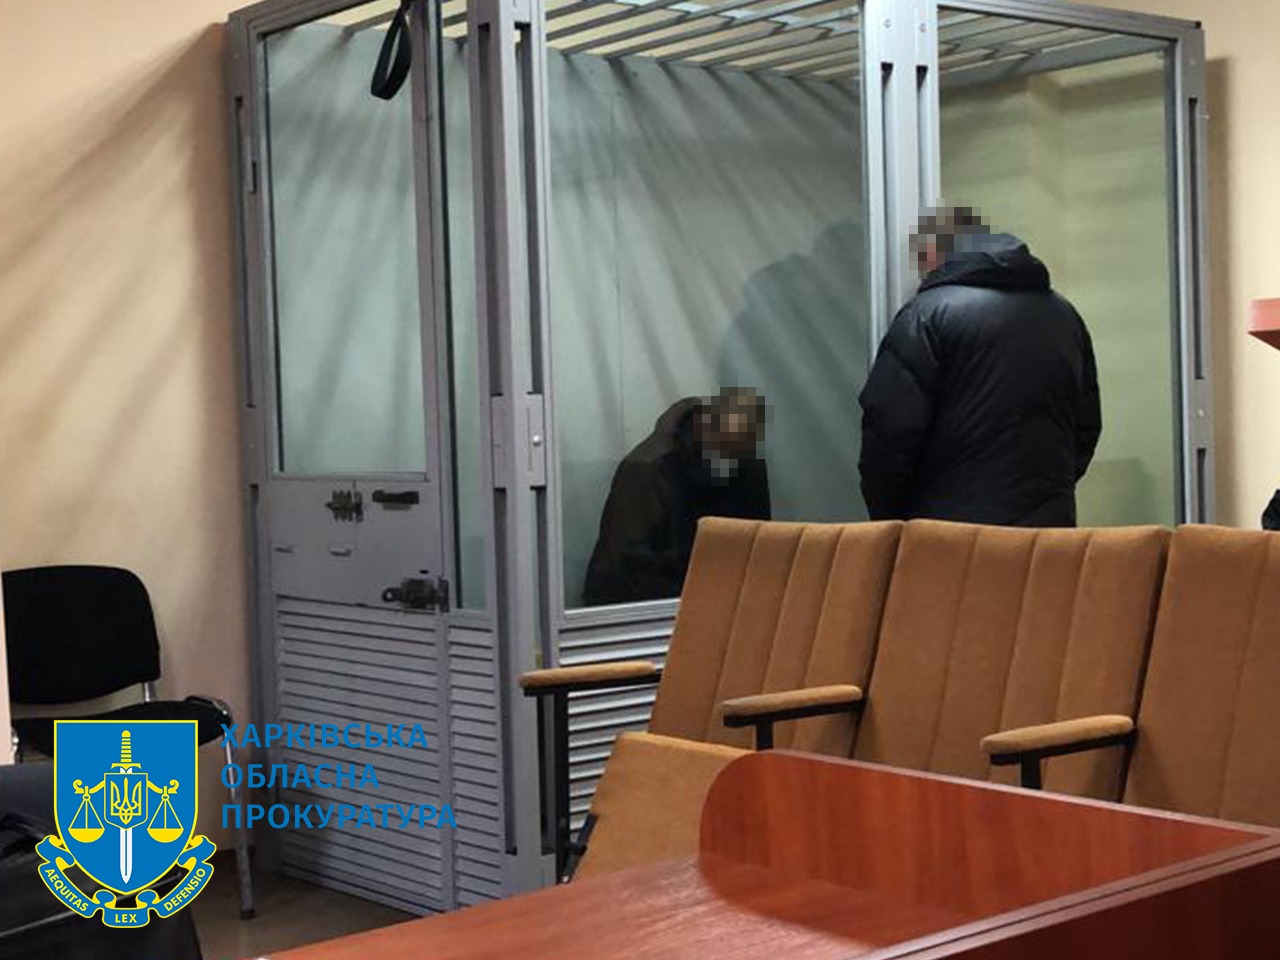 Криминал Харьков: убил знакомого и бросил тело в карьер